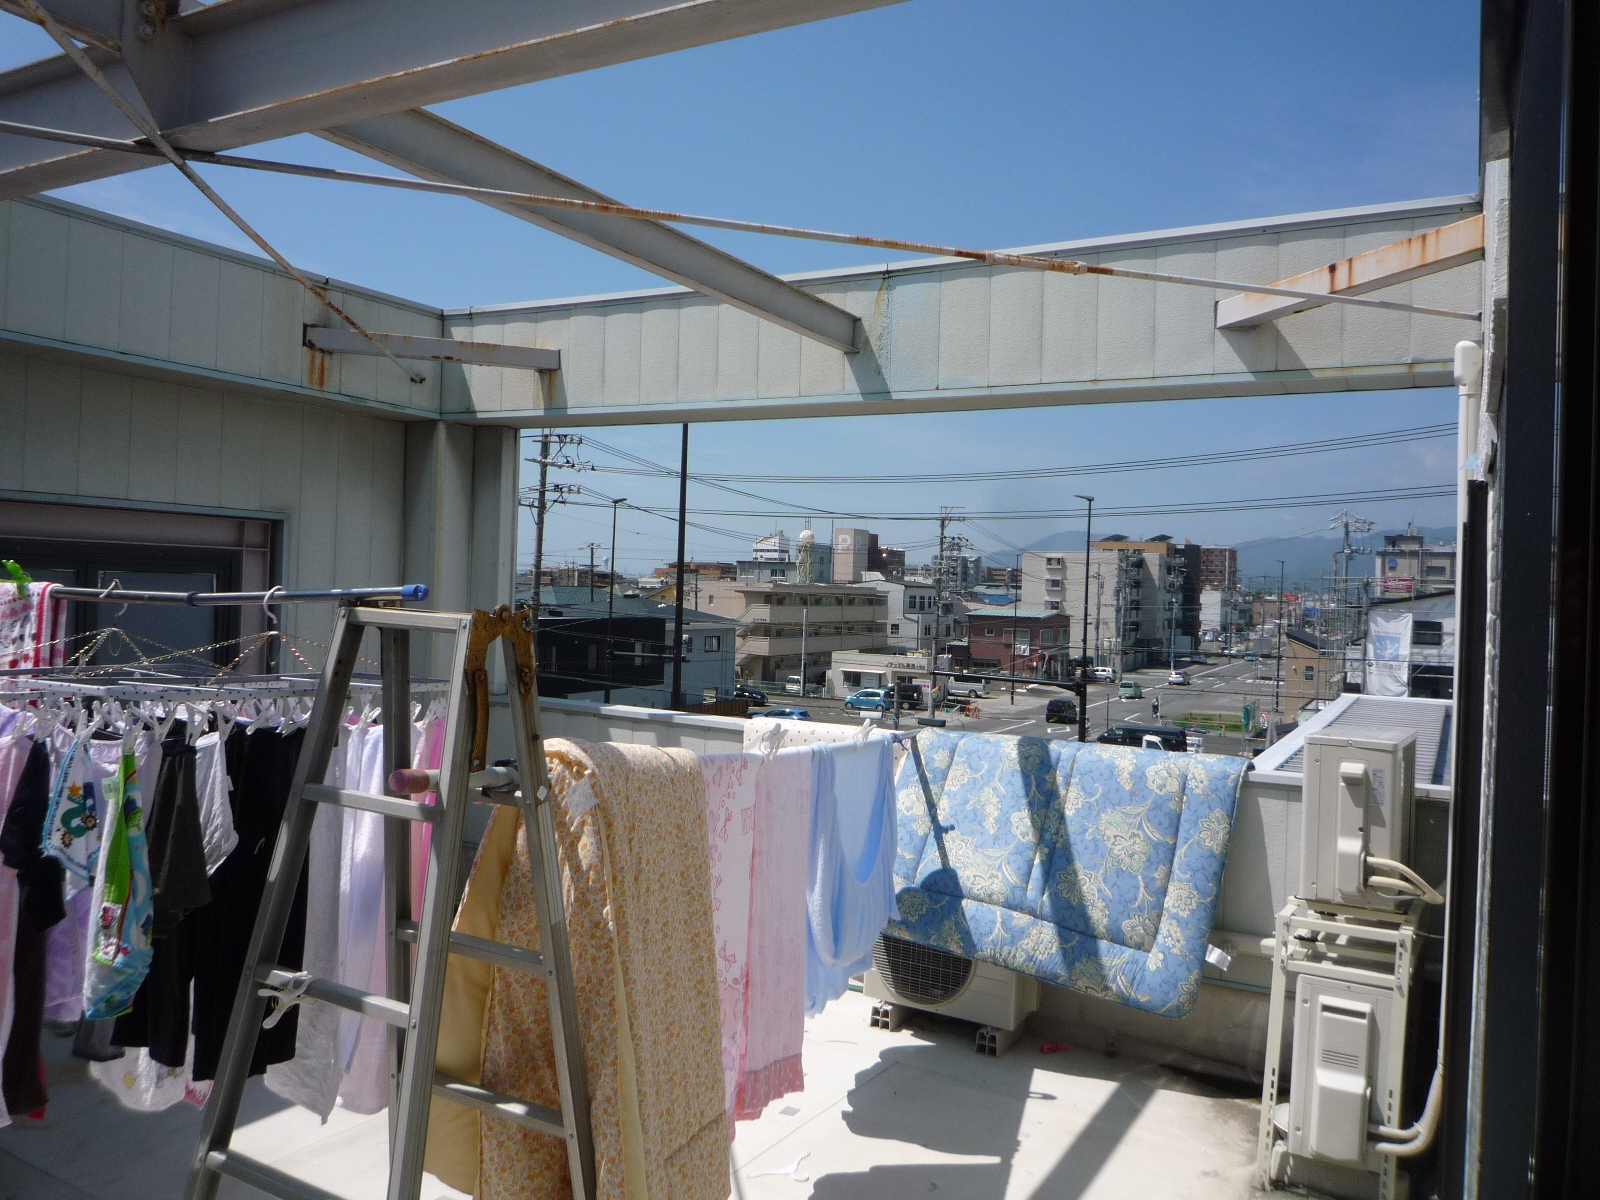 静岡市駿河区、築２６年の鉄骨３建て住宅の洗濯干し場に屋根を付けて洗濯物が雨で濡れない工夫をしたいとの御連絡を頂きました